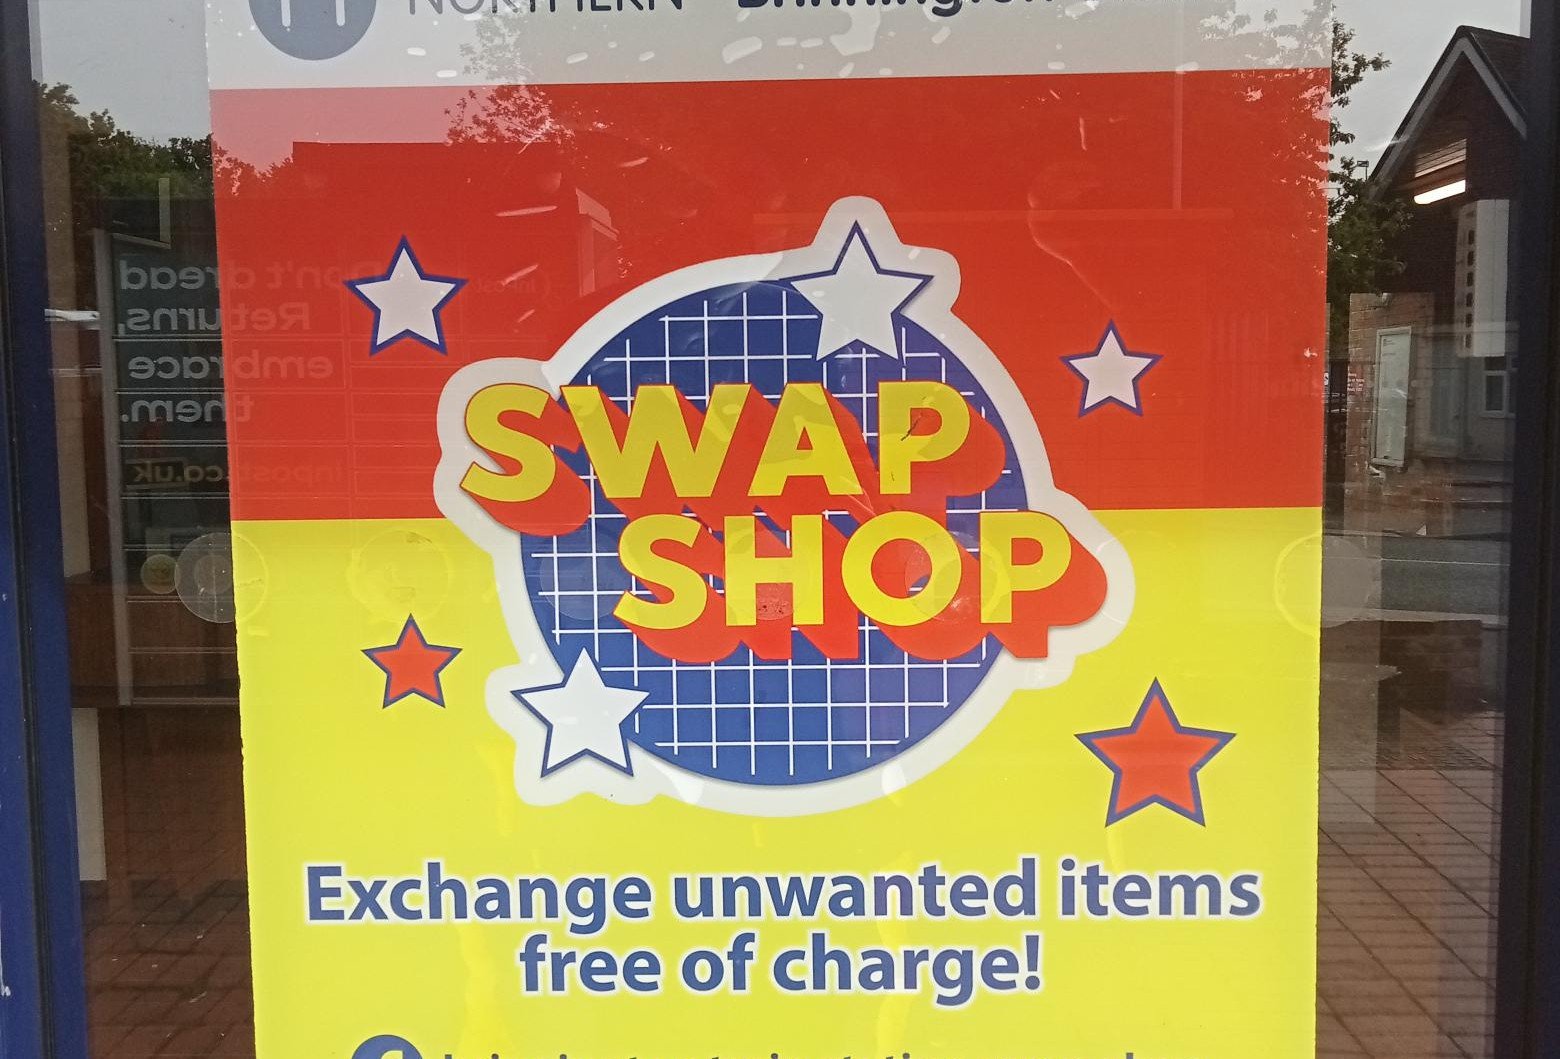 image-shows-swap-shop-signage-at-brinnington-station